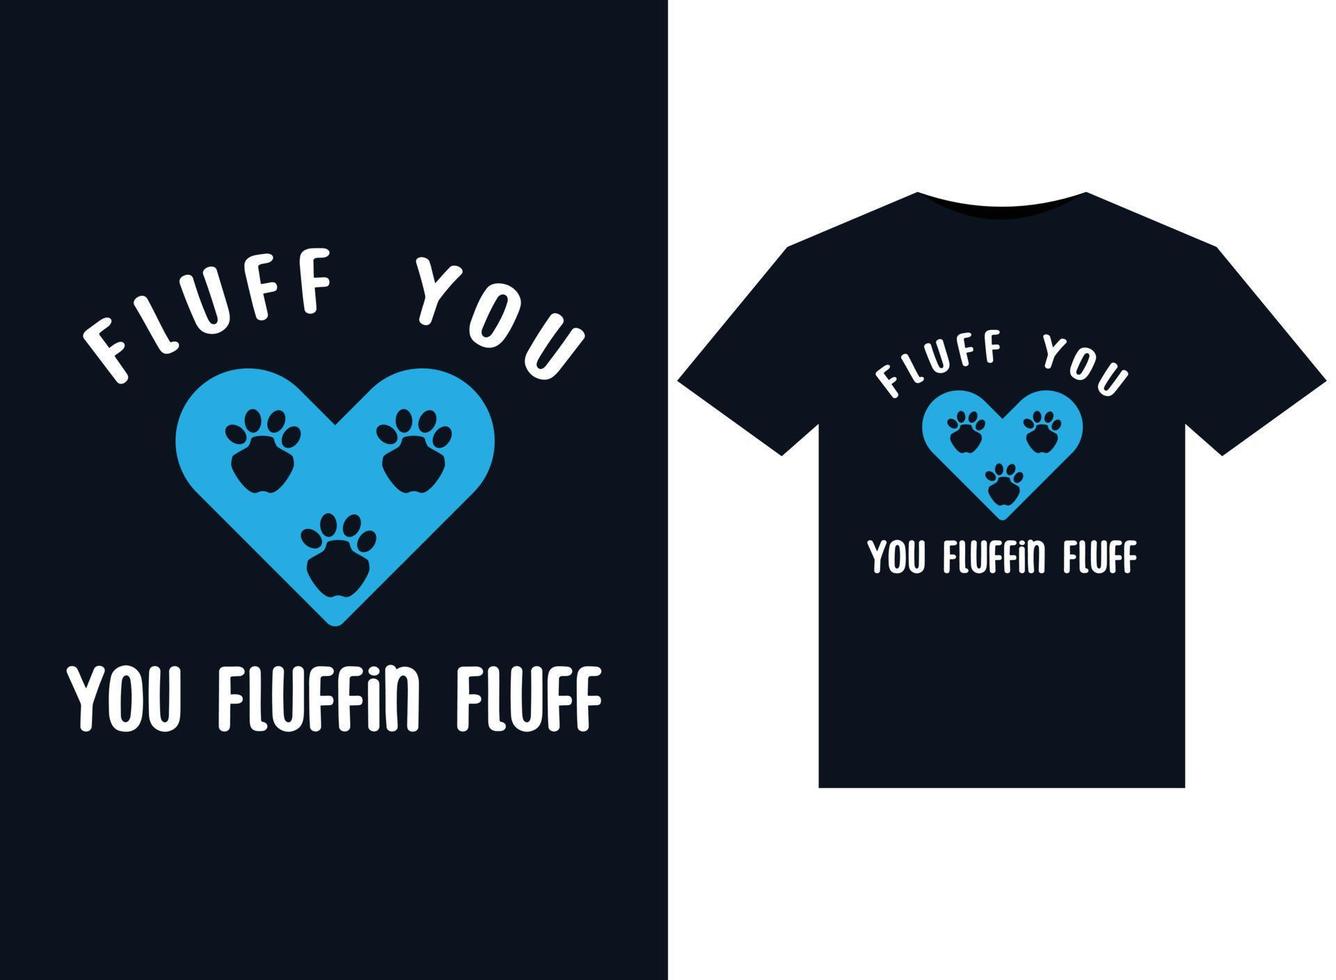 fluff you you fluffin ilustrações de fluff para design de camisetas prontas para impressão vetor